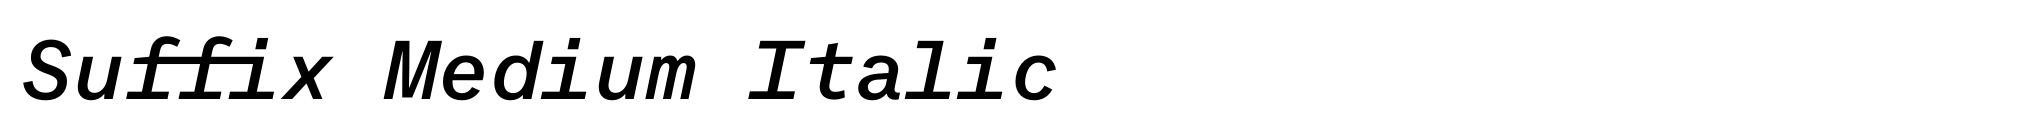 Suffix Medium Italic image